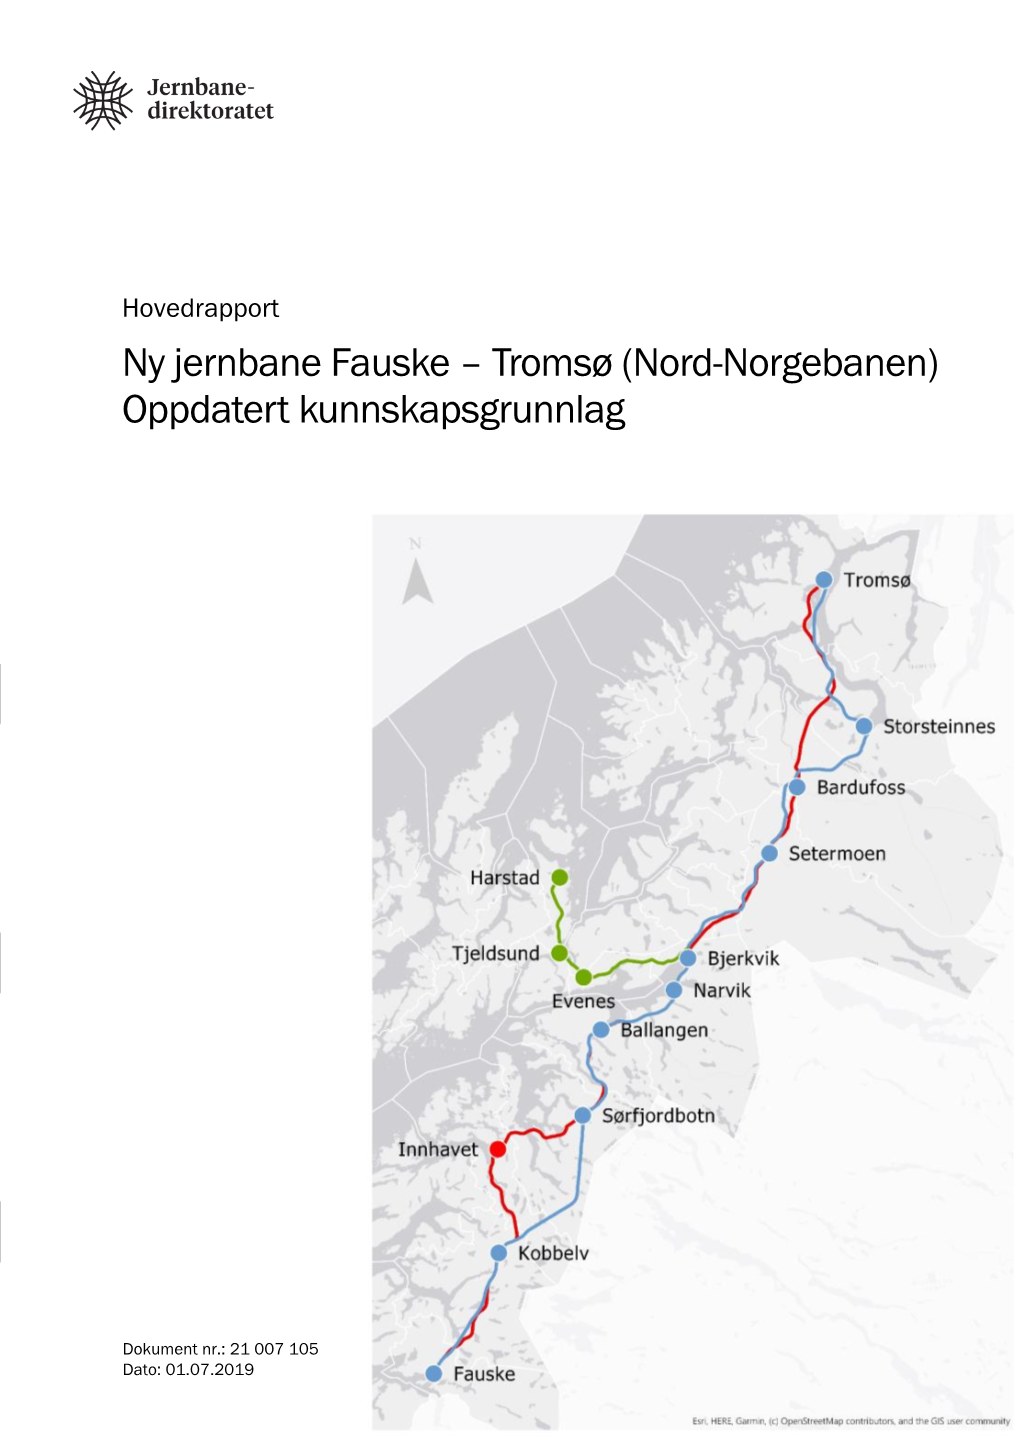 Tromsø (Nord-Norgebanen) Oppdatert Kunnskapsgrunnlag